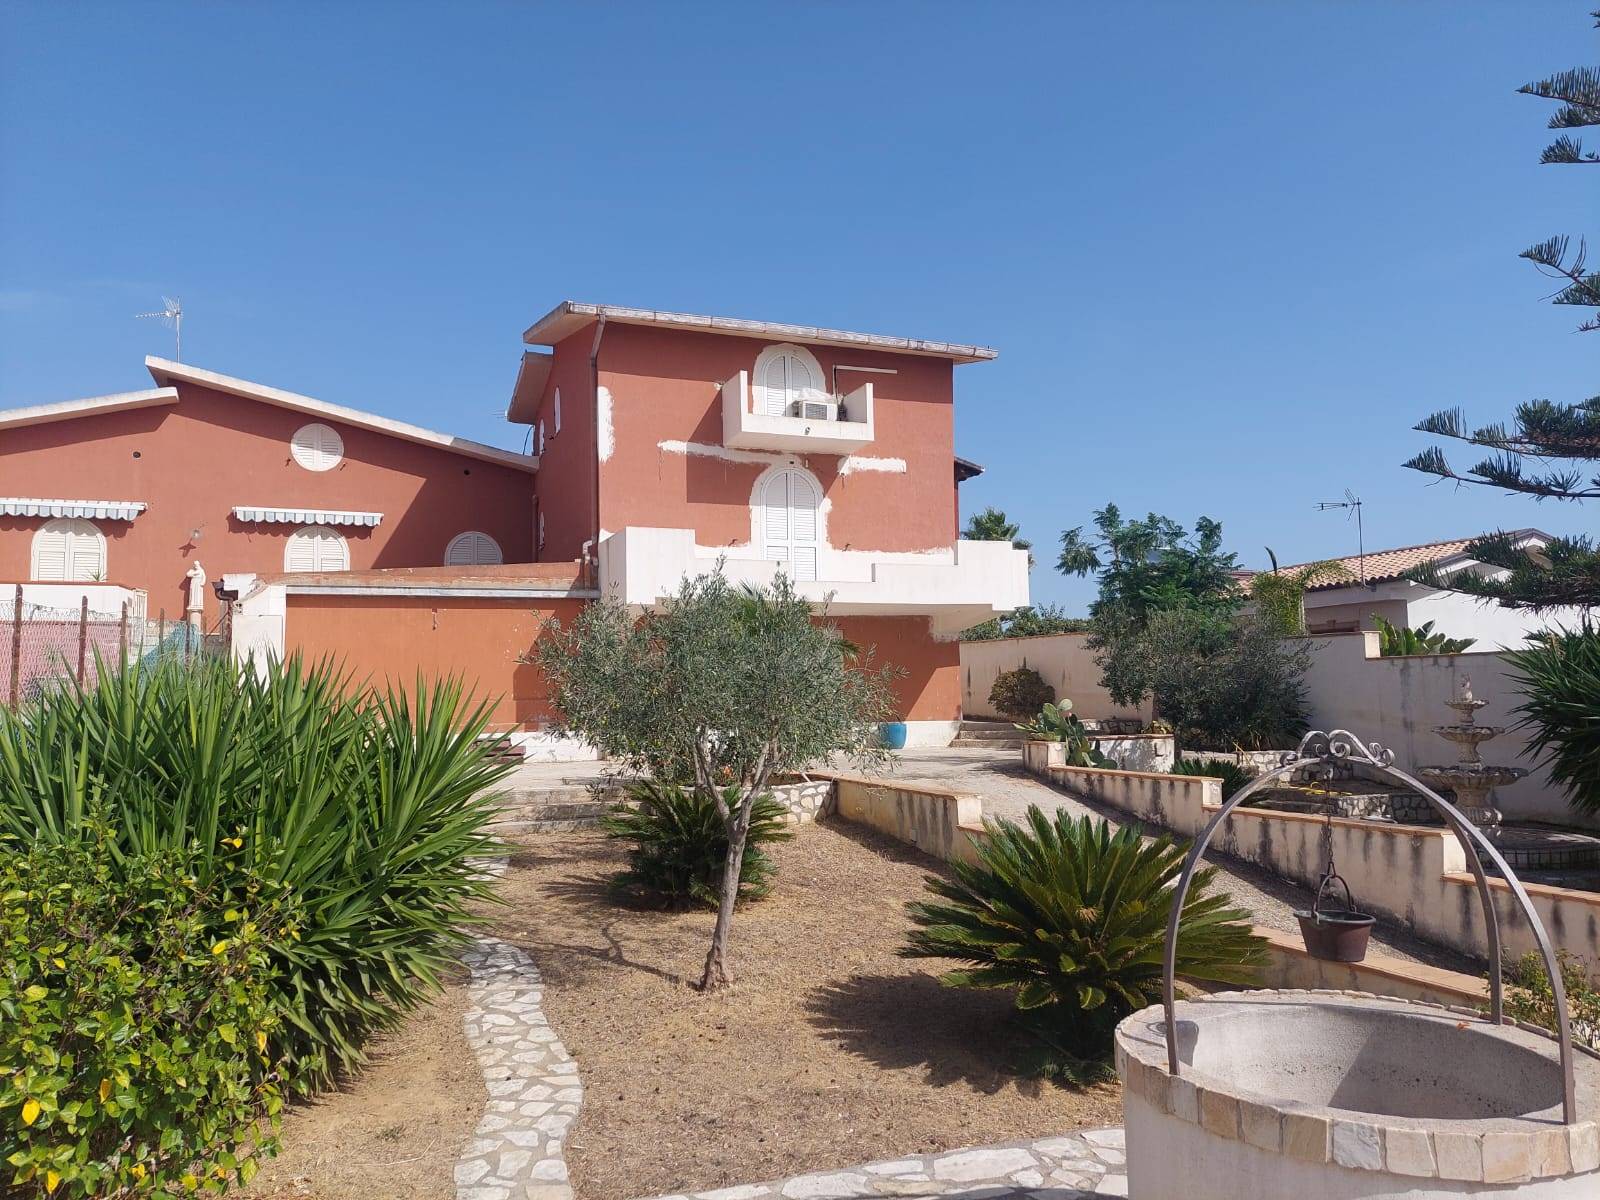 Villa in vendita a Agrigento, 7 locali, zona Località: VILLAGGIO MOSÉ, prezzo € 300.000 | PortaleAgenzieImmobiliari.it